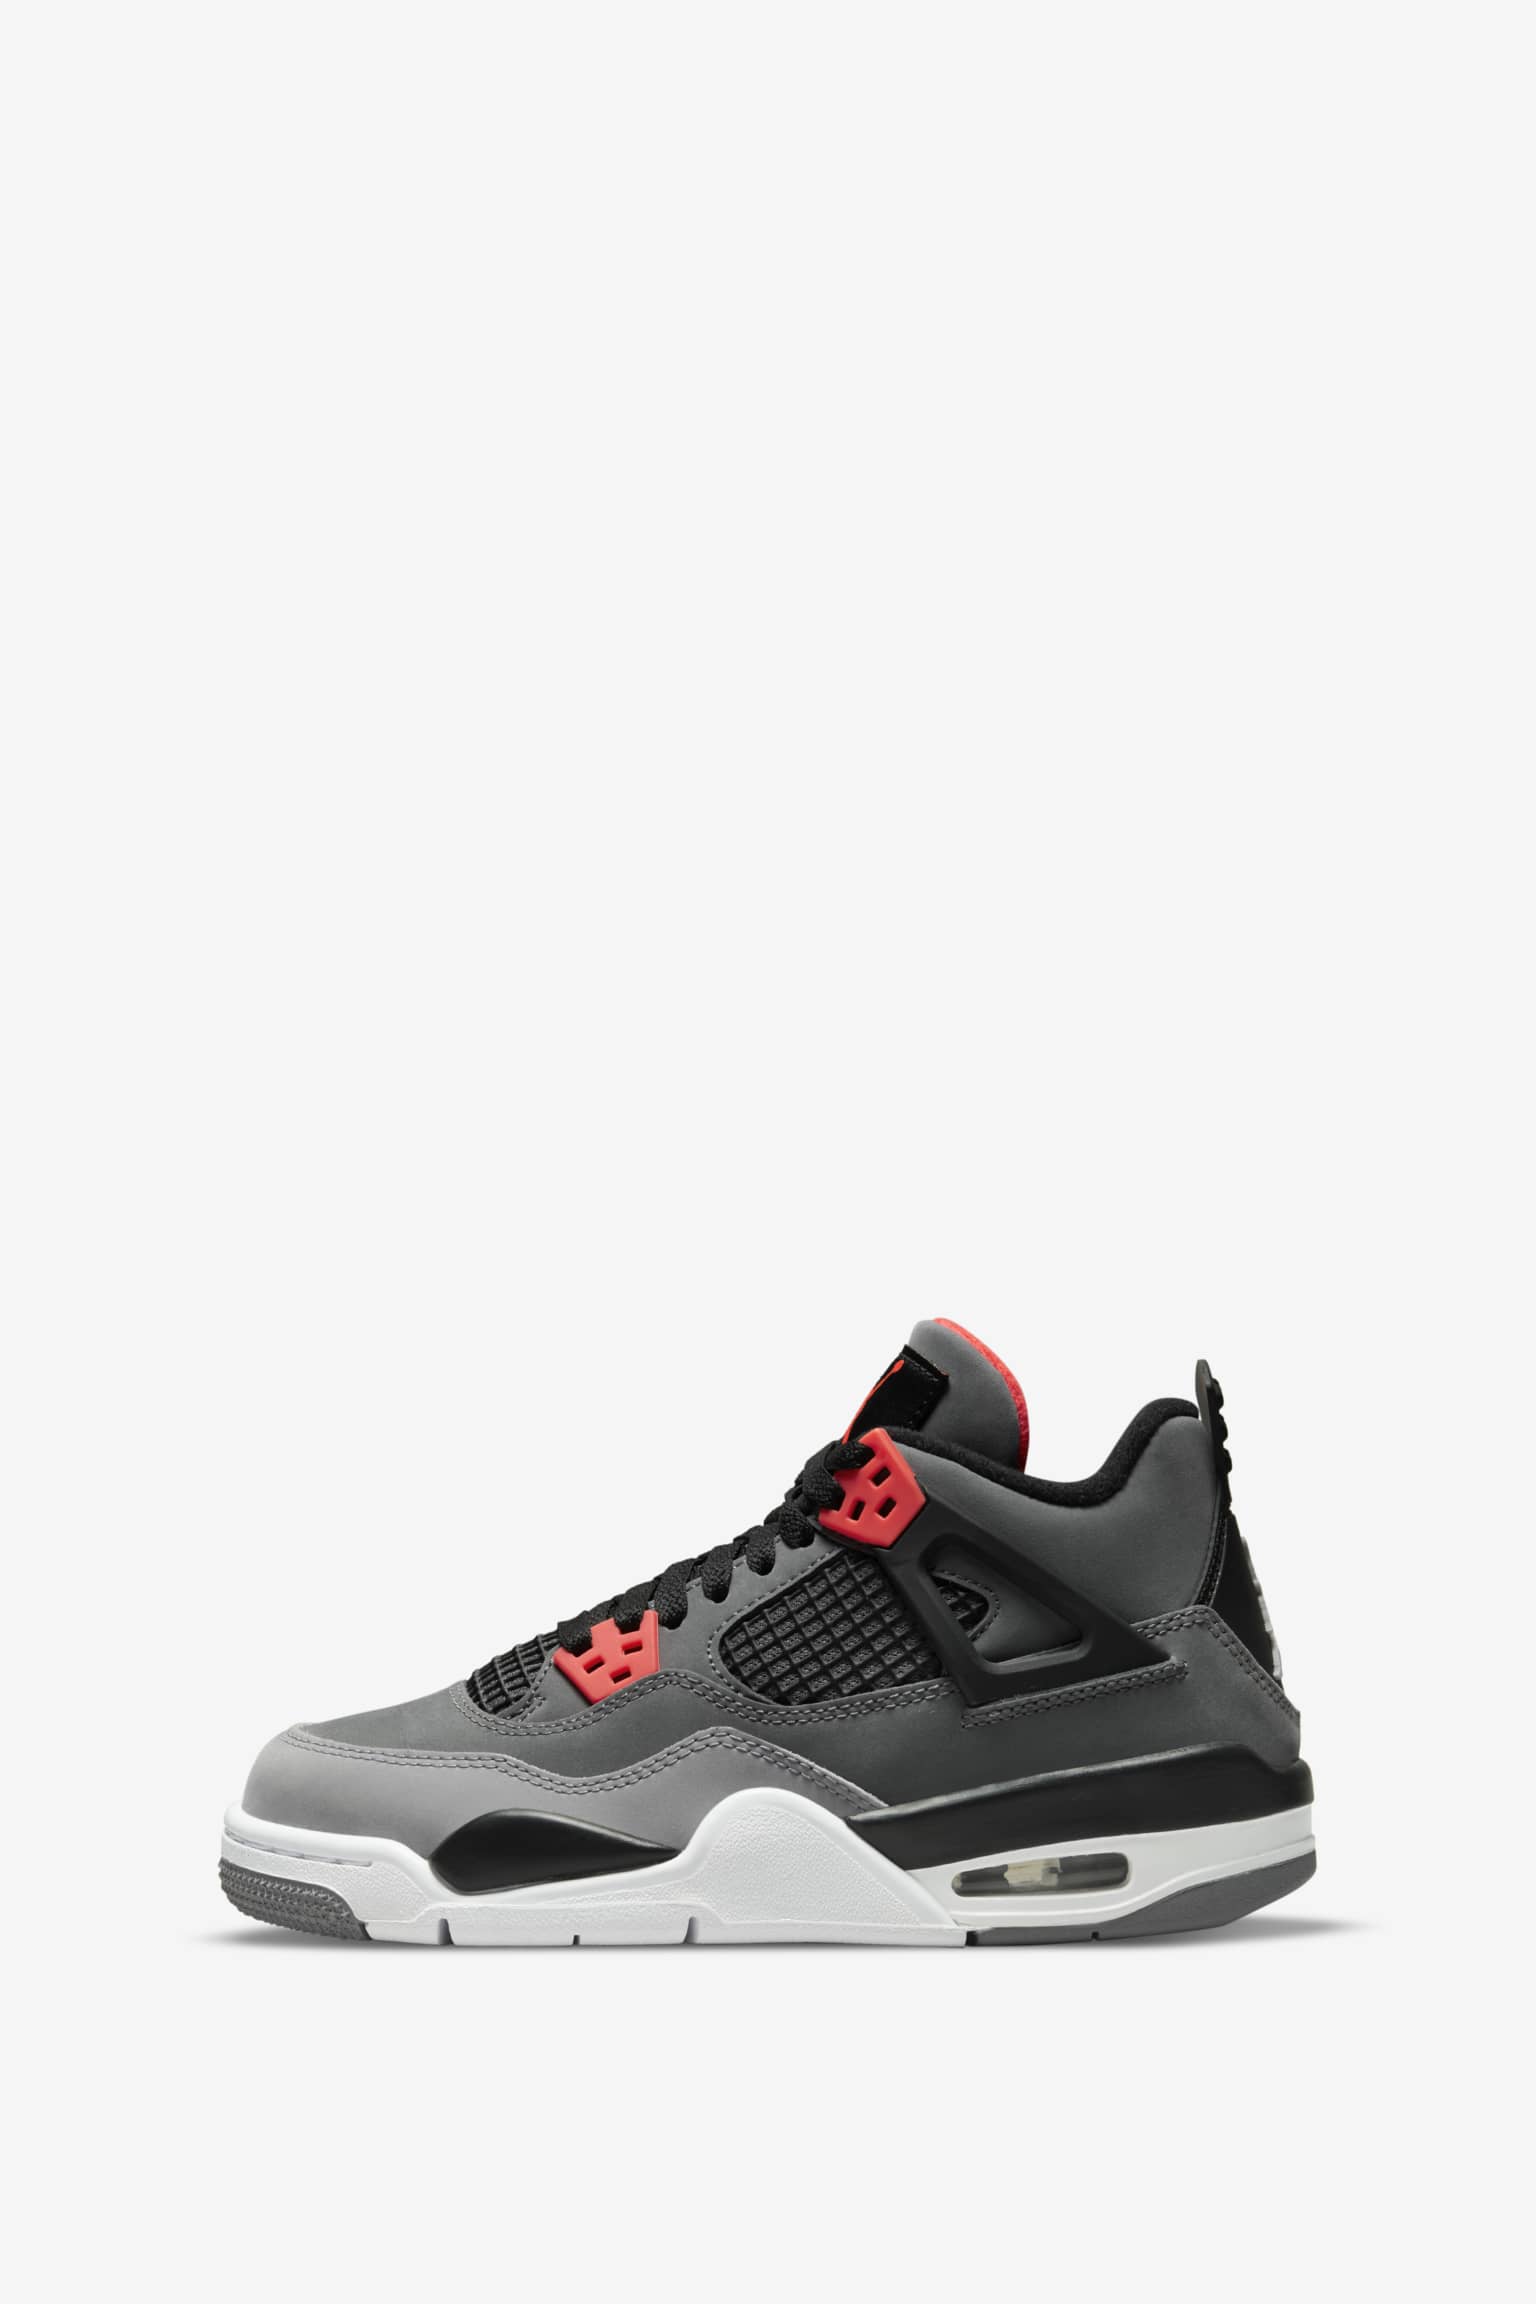 Fecha de de las Air Jordan 4 "Infrared" (DH6927-061). Nike SNKRS ES